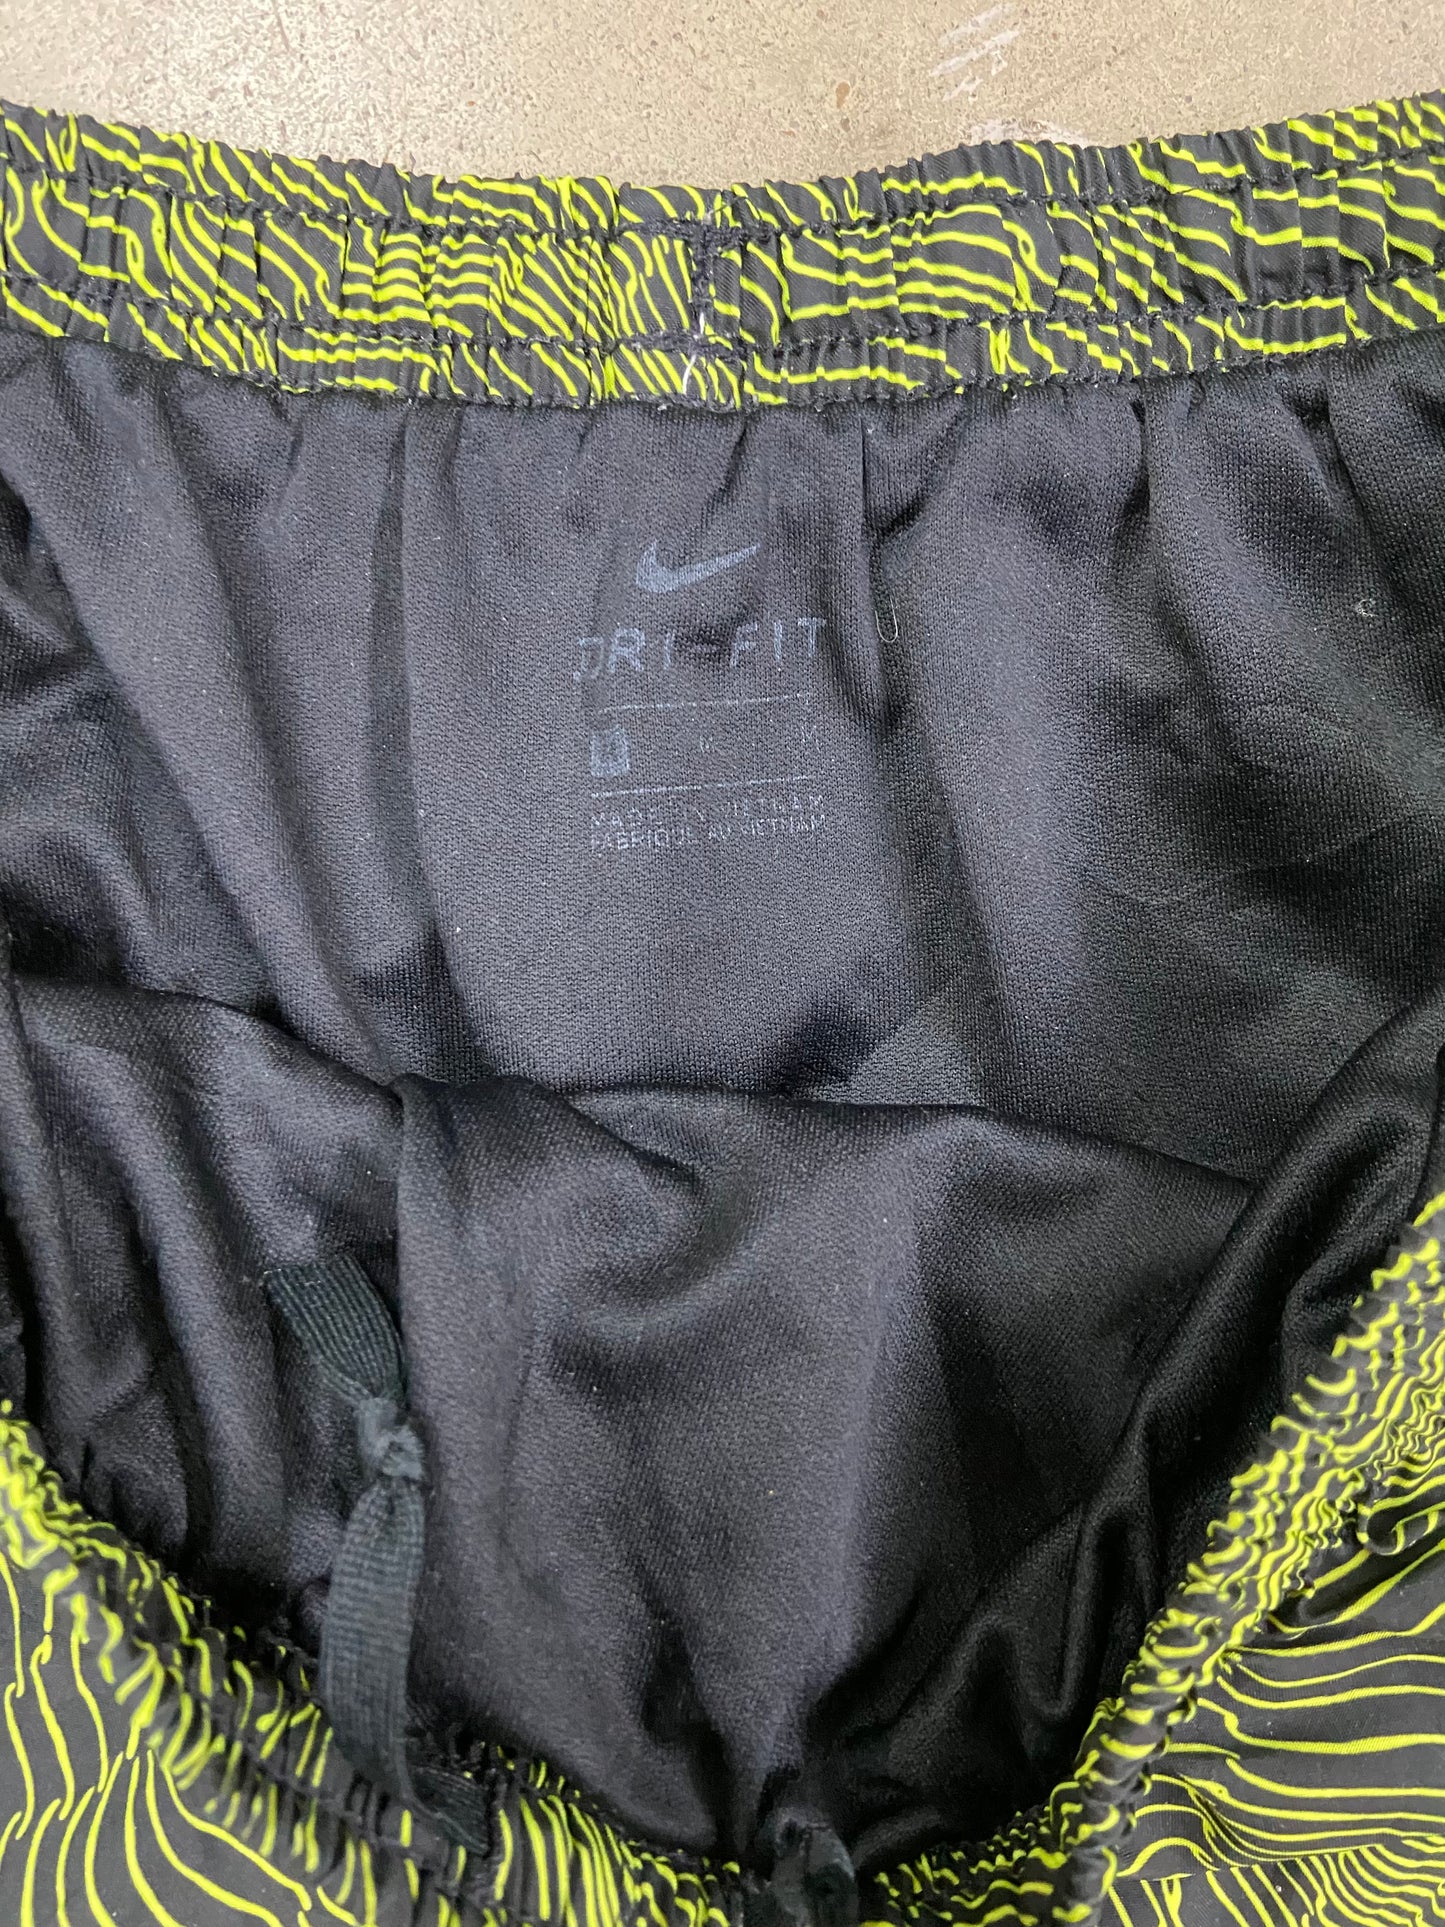 Wmns Nike Dri-Fit Green/Black Running Shorts Sz M